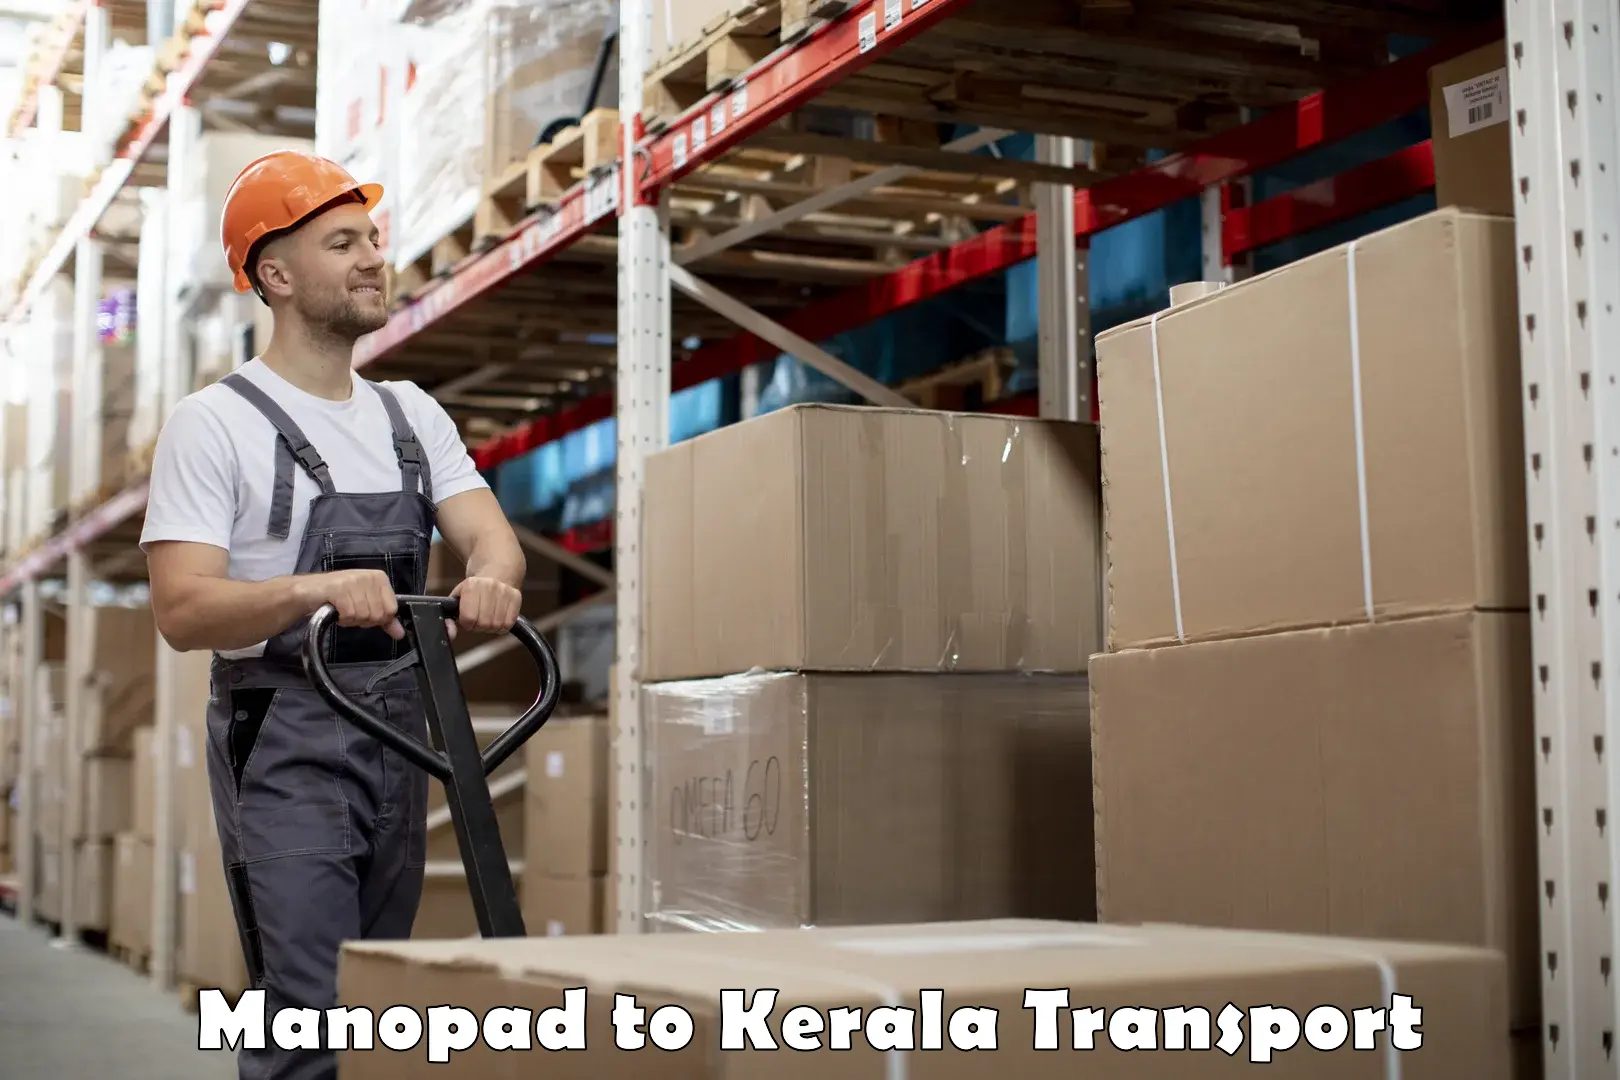 Shipping partner Manopad to Kerala